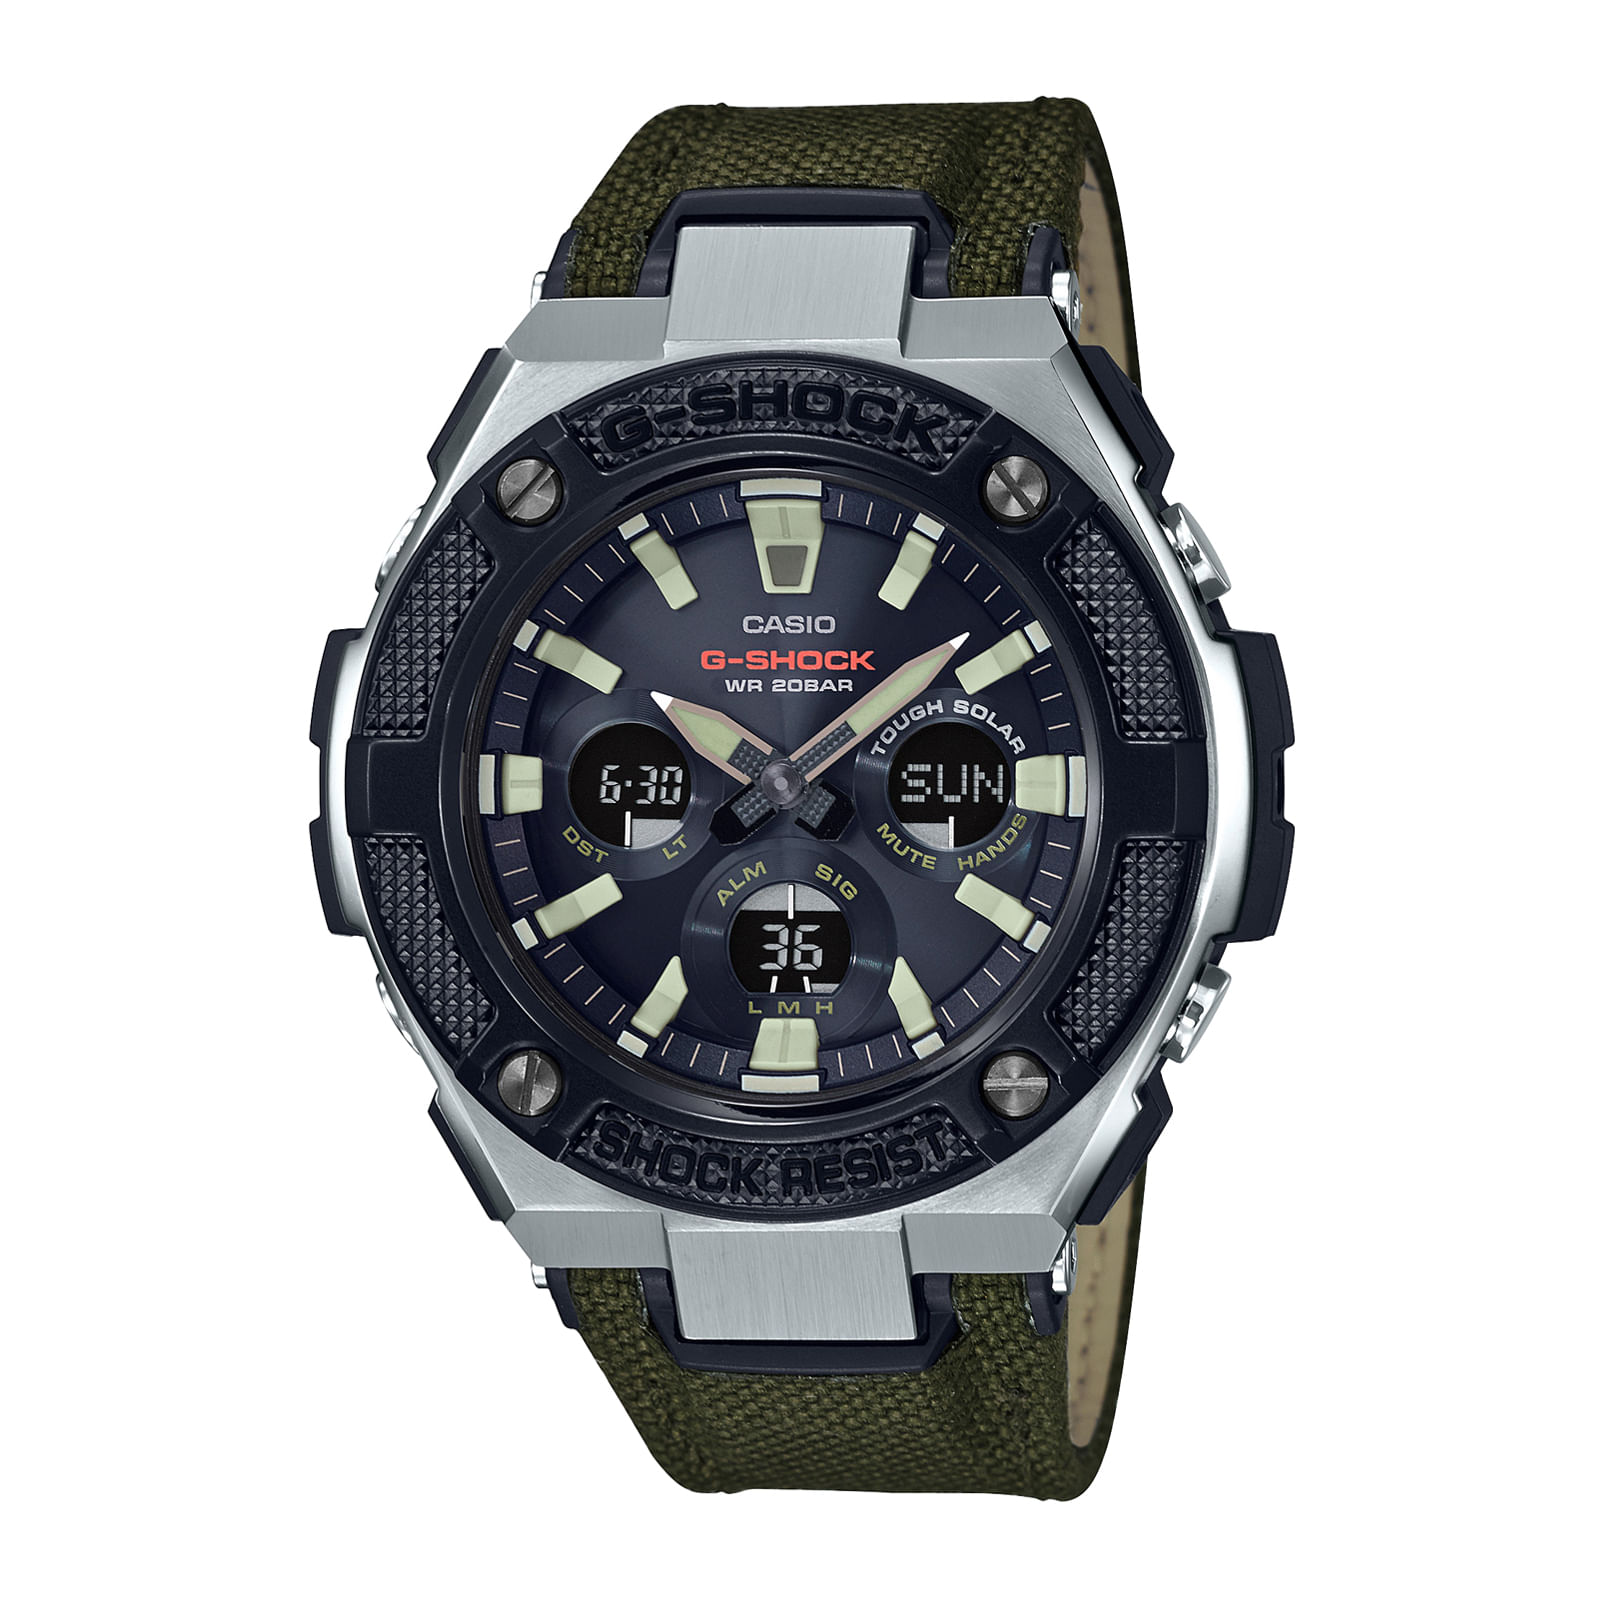 Reloj G-SHOCK GST-S330AC-3A Resina/Acero Hombre Negro/Plateado